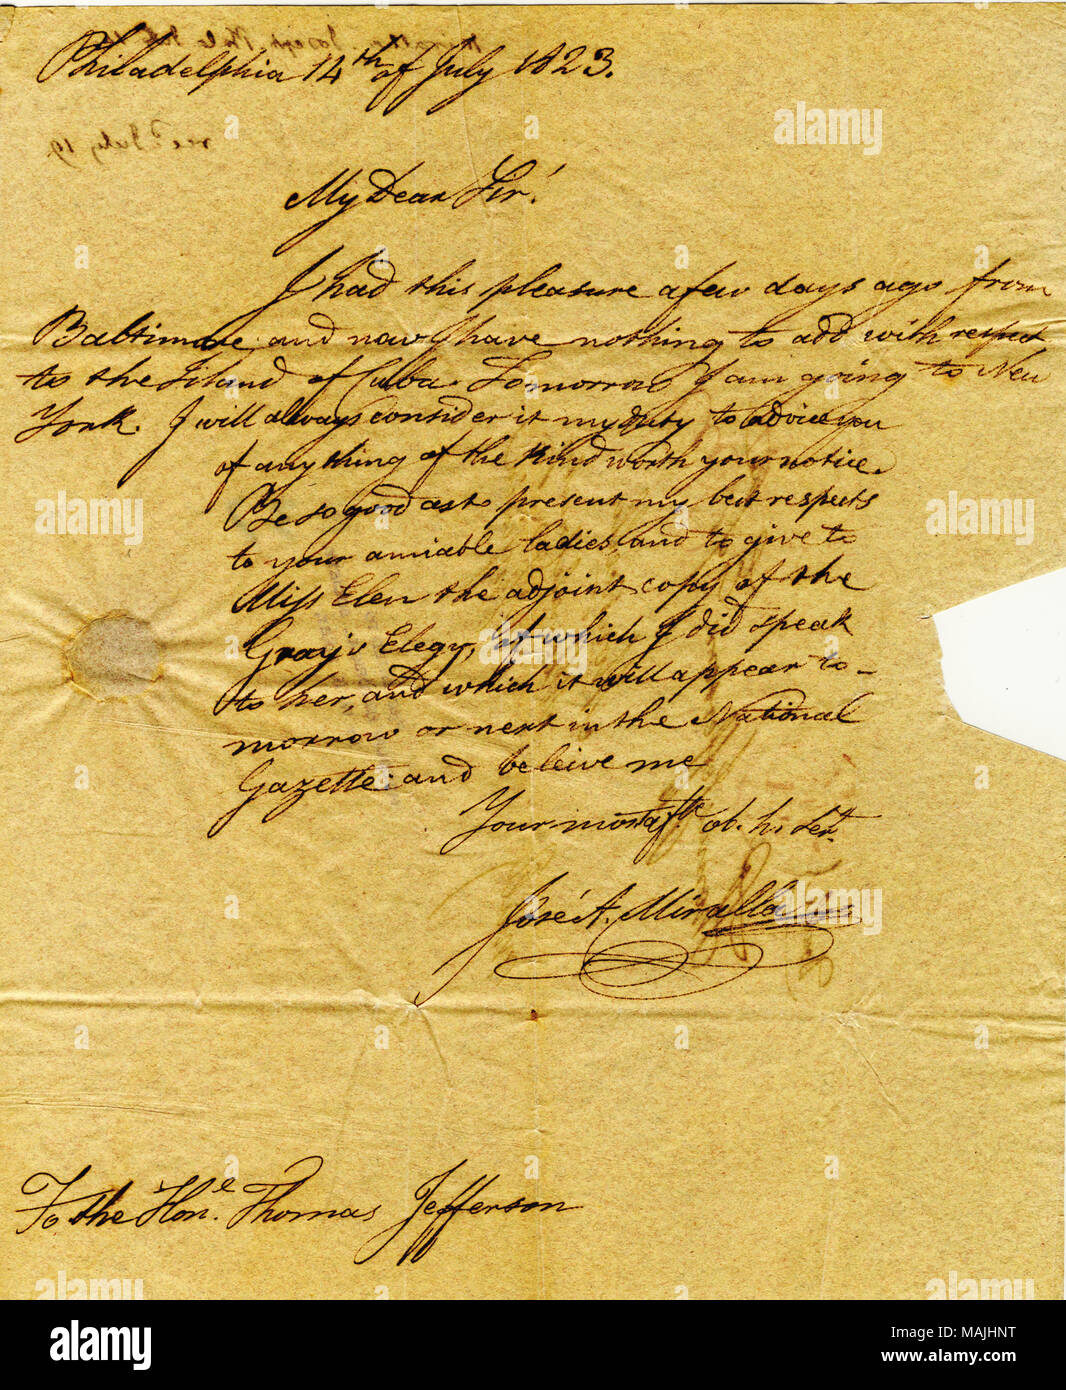 Envoie une copie de Grey's Elegy en espagnol de Miss Ellen. La lettre est écrite sur la page intérieure d'une élégie intitulée 'Traduccion.' (3 pages) Titre : lettre signée Jose Antonio Miralla, Philadelphie, à Thomas Jefferson, le 14 juillet 1823 . 14 juillet 1823. Miralla, Jose Antonio Banque D'Images